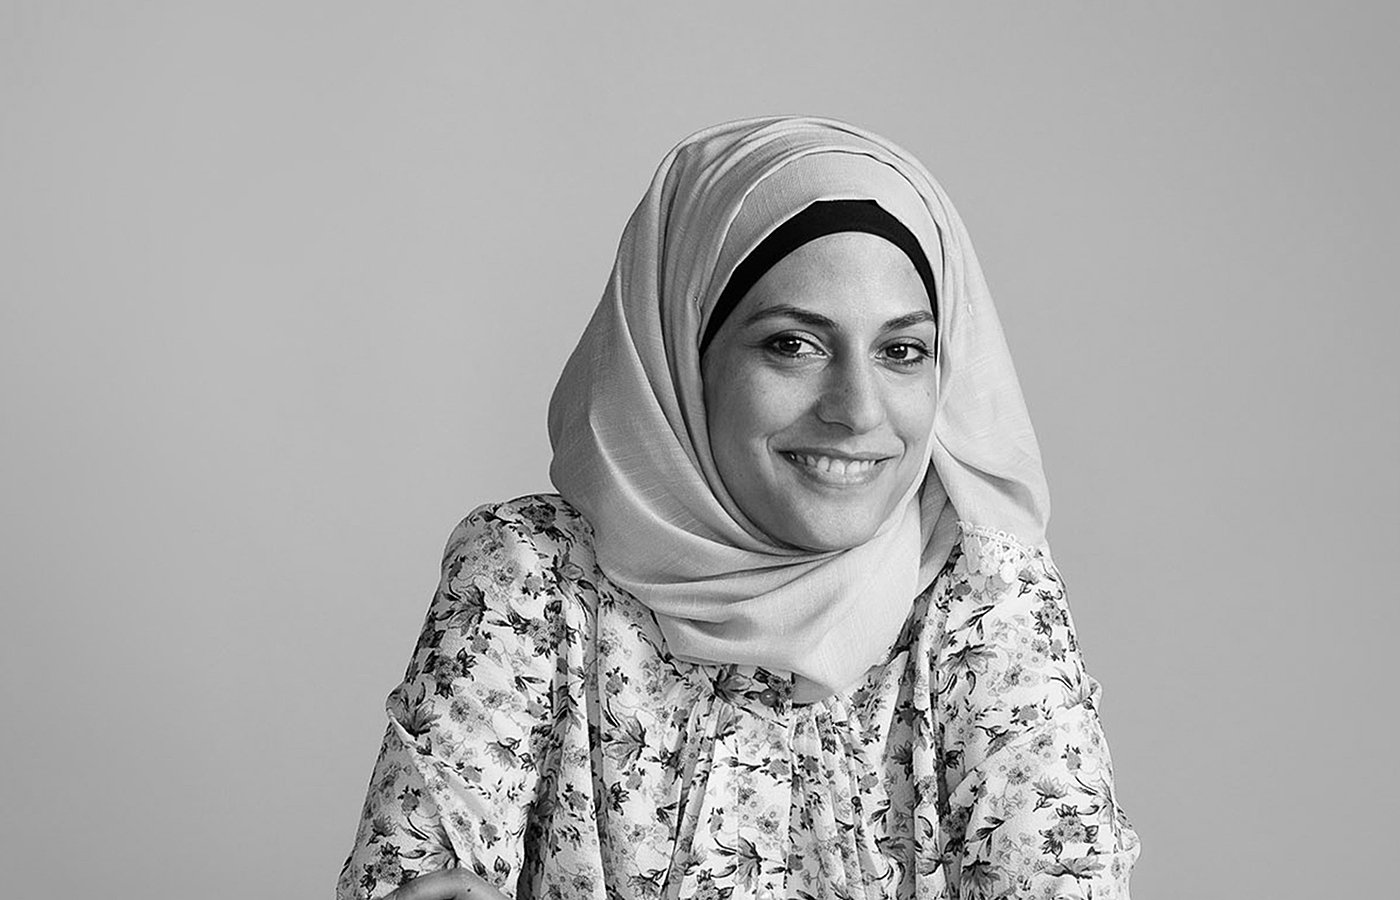  Marwa Al Sabouni  